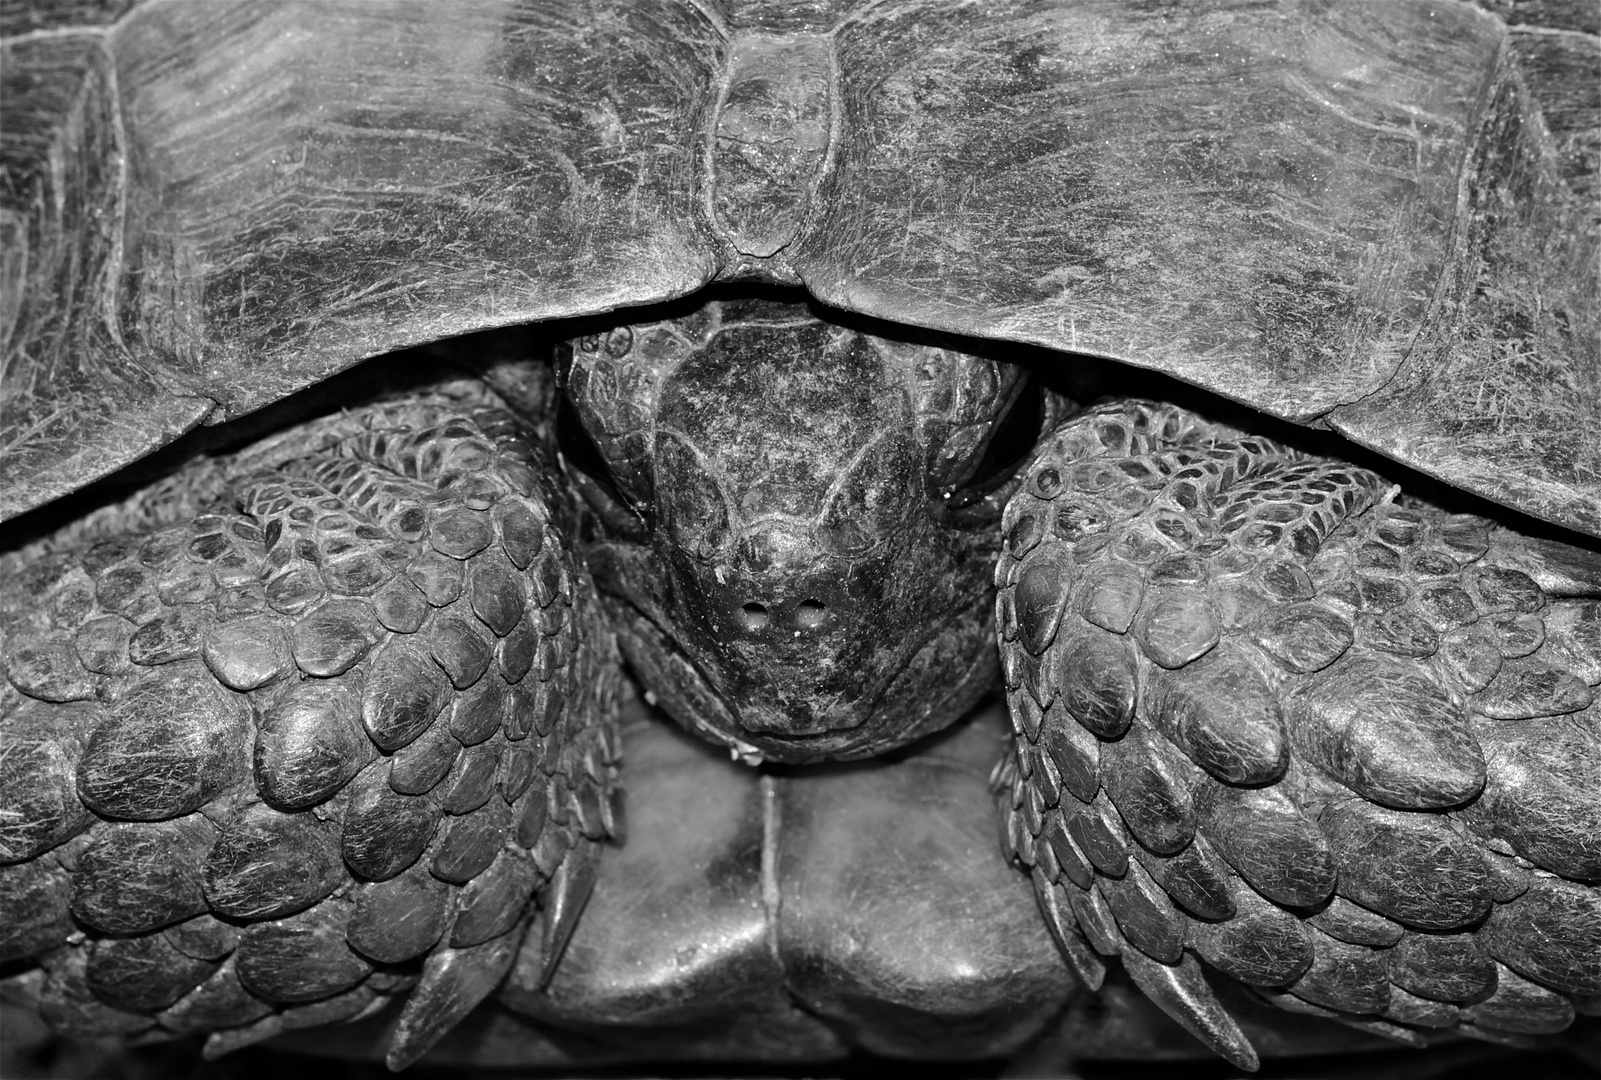 Wunderbare Türkei 46 - Maurische Landschildkröte